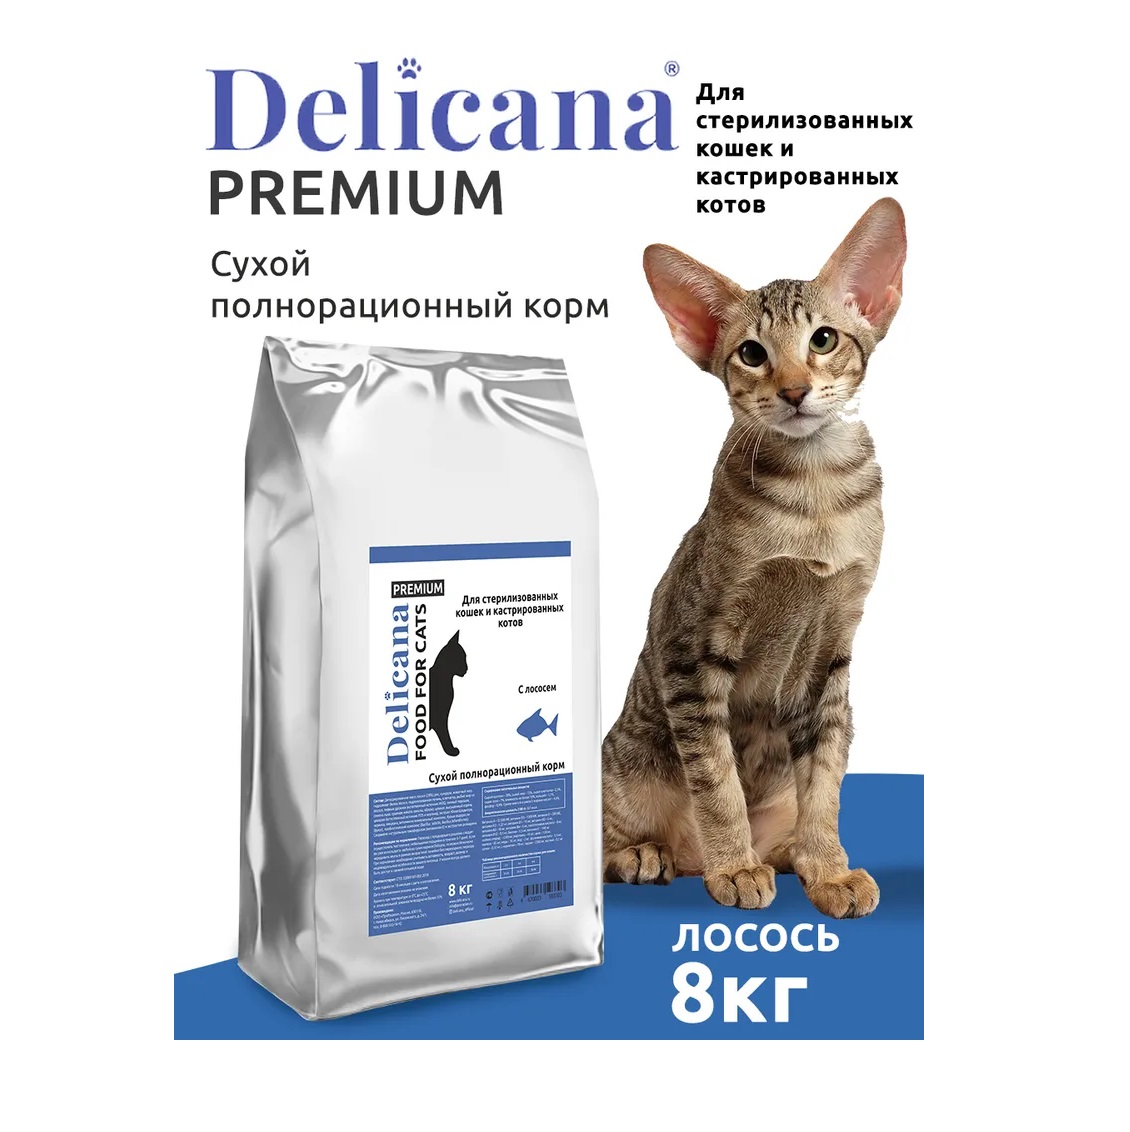 Деликана 8кг для кошек Стерилизованных - Лосось (Delicana)